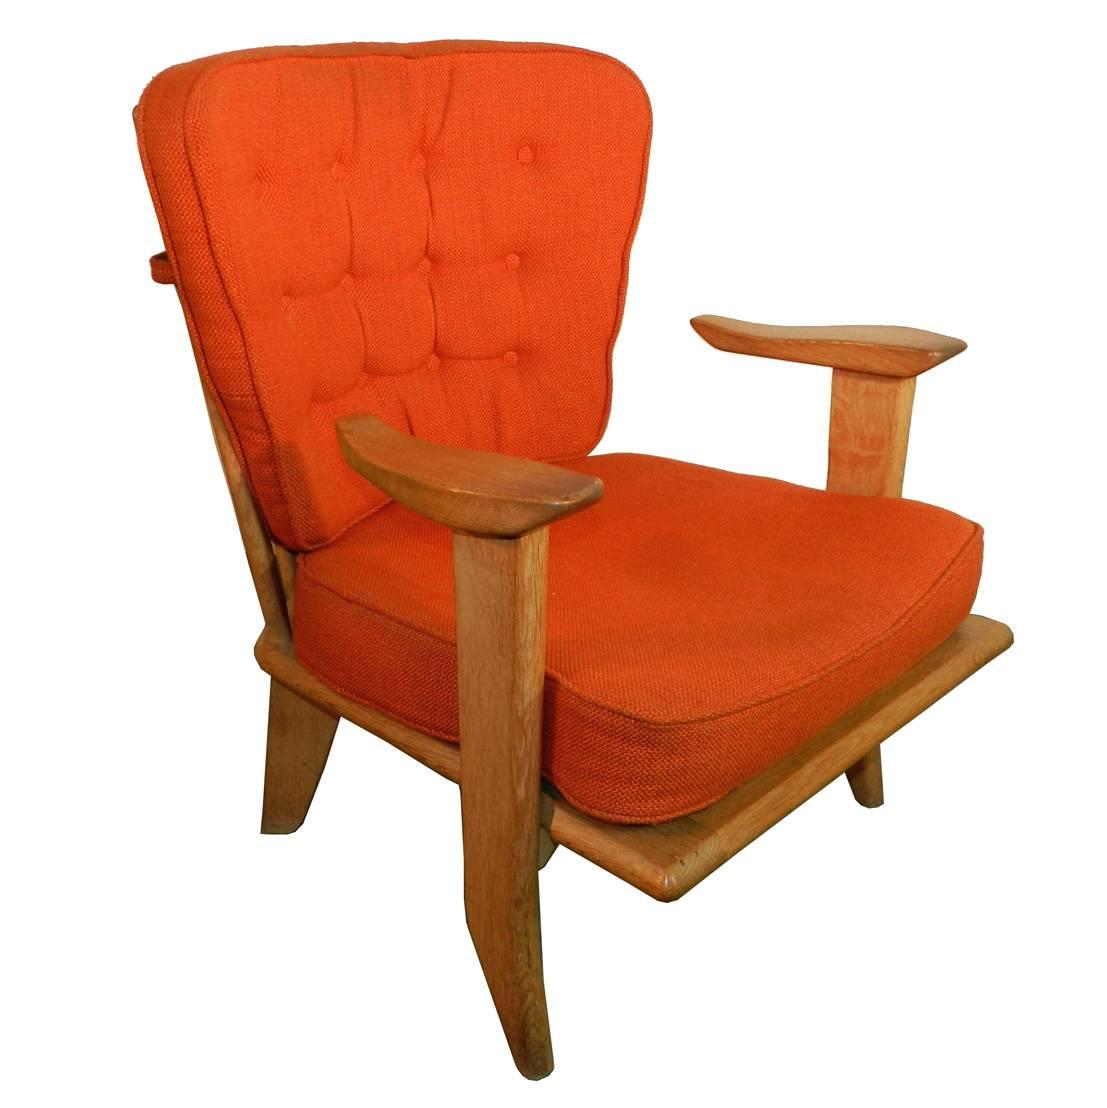 Guillerme et Chambron, two waxed oak armchairs. Votre Maison Edition.
